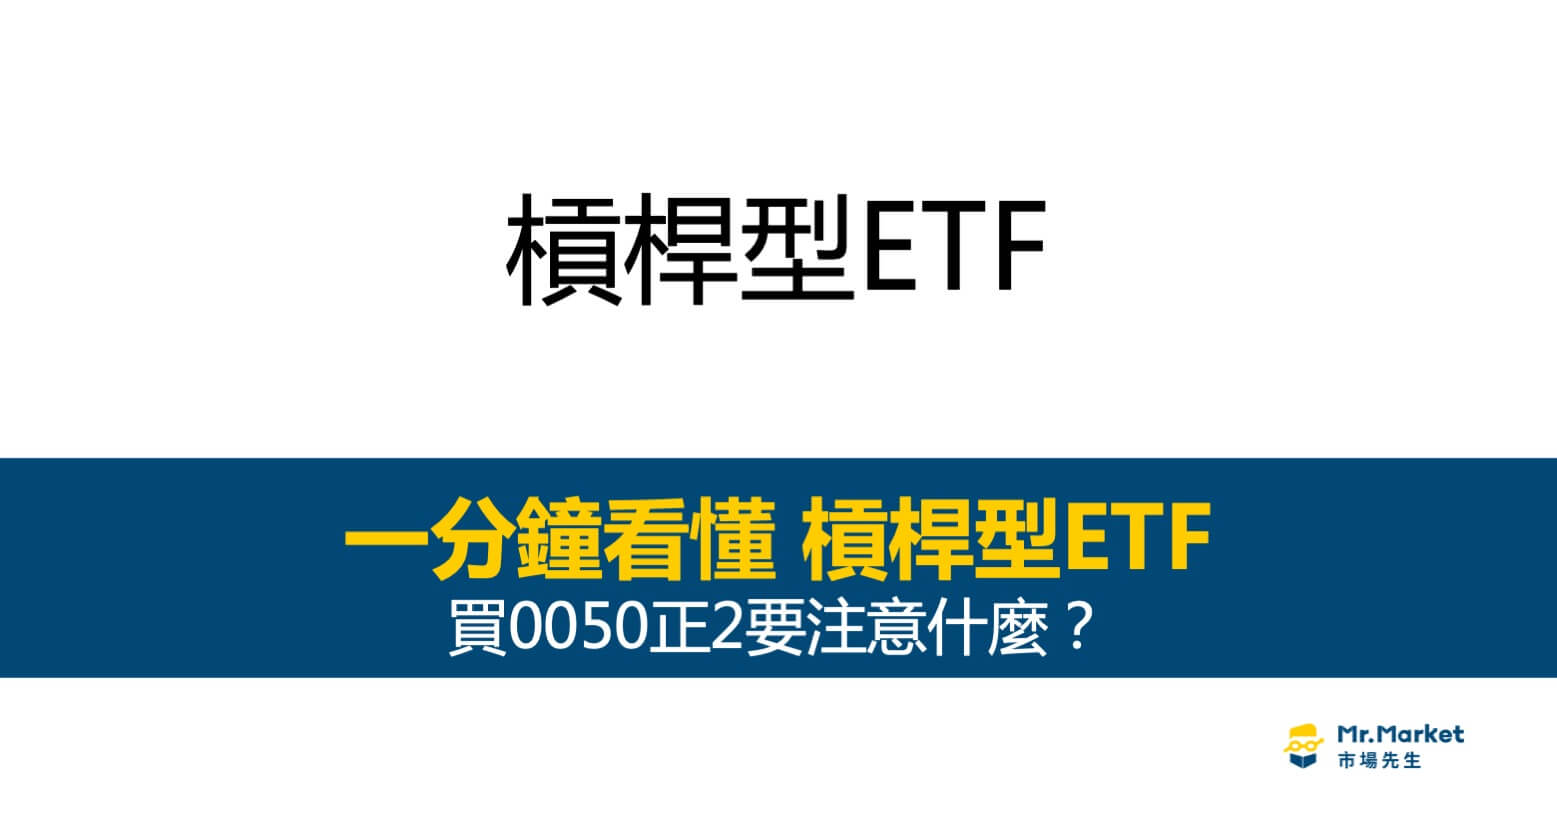 槓桿ETF是什麼